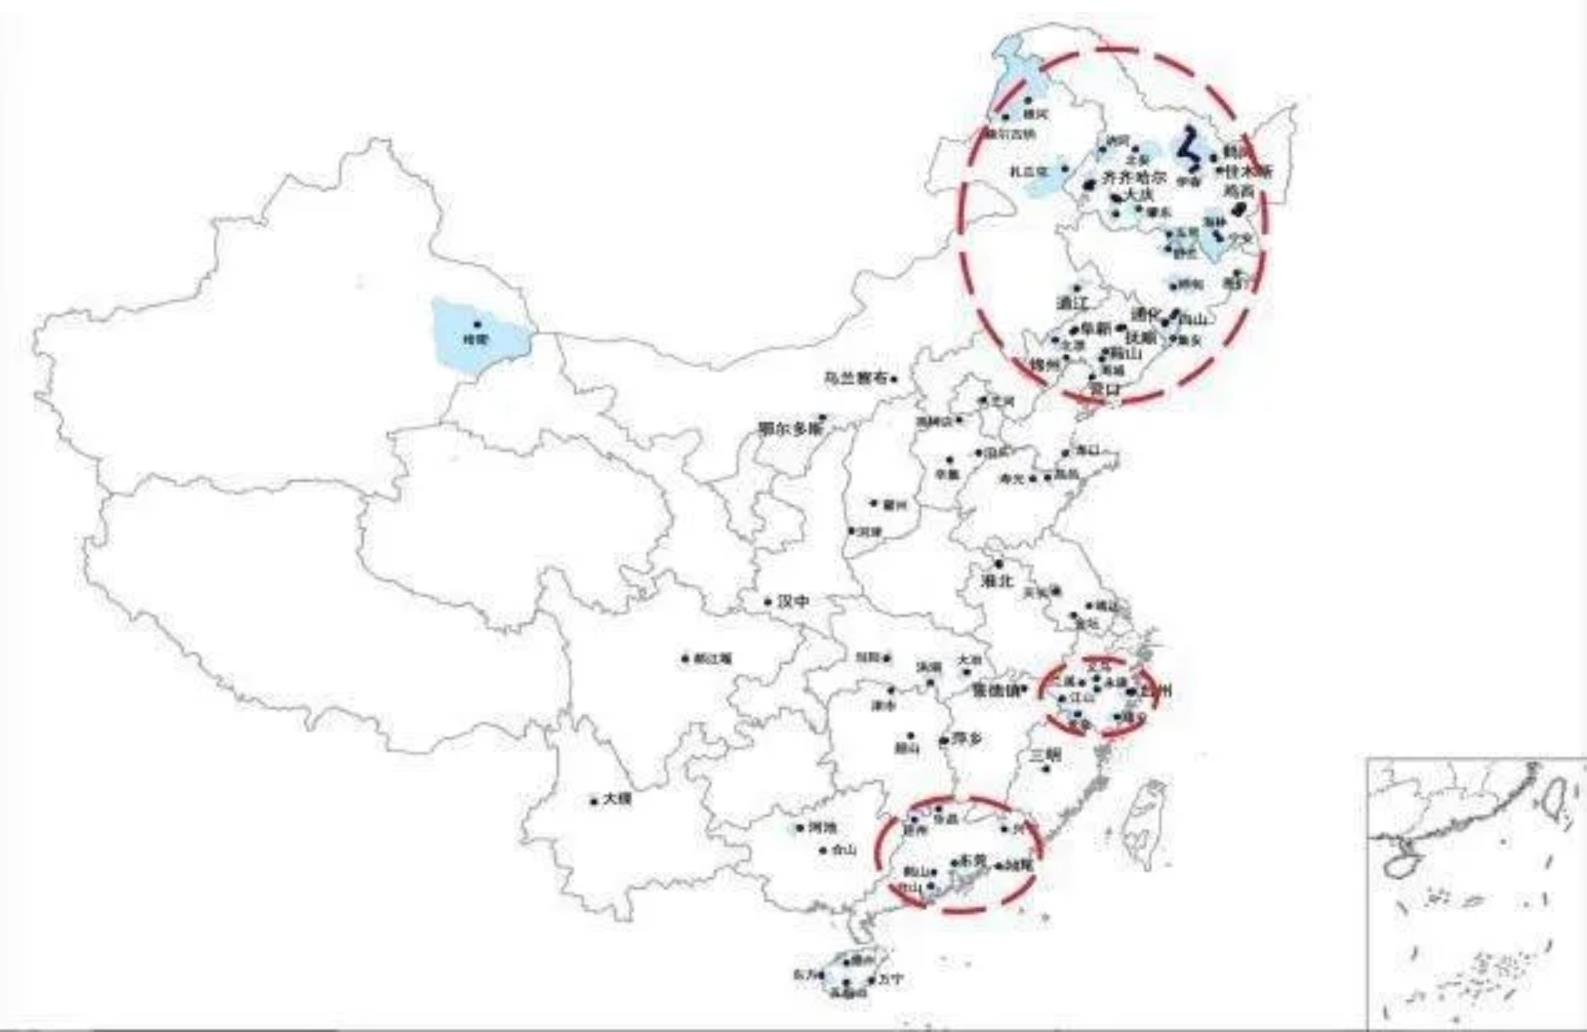 吴康利用2007年至2016中国城市建设统计年鉴发现的收缩城市地图